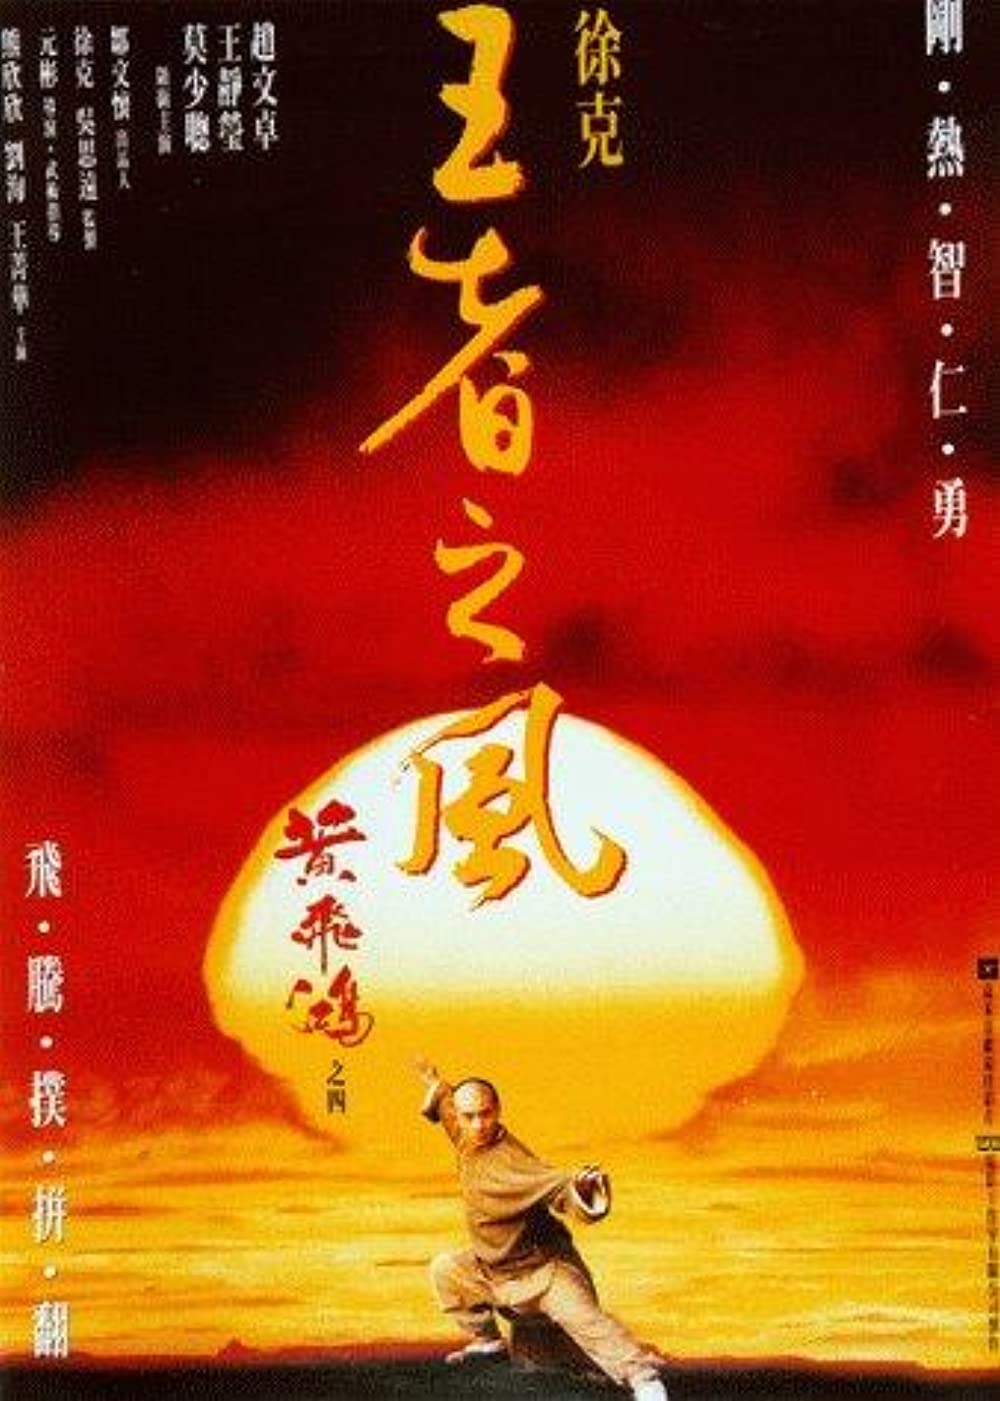 ดูหนังออนไลน์ฟรี ONCE UPON A TIME IN CHINA (1993) หวงเฟยหง ถล่มสิงโตคำราม